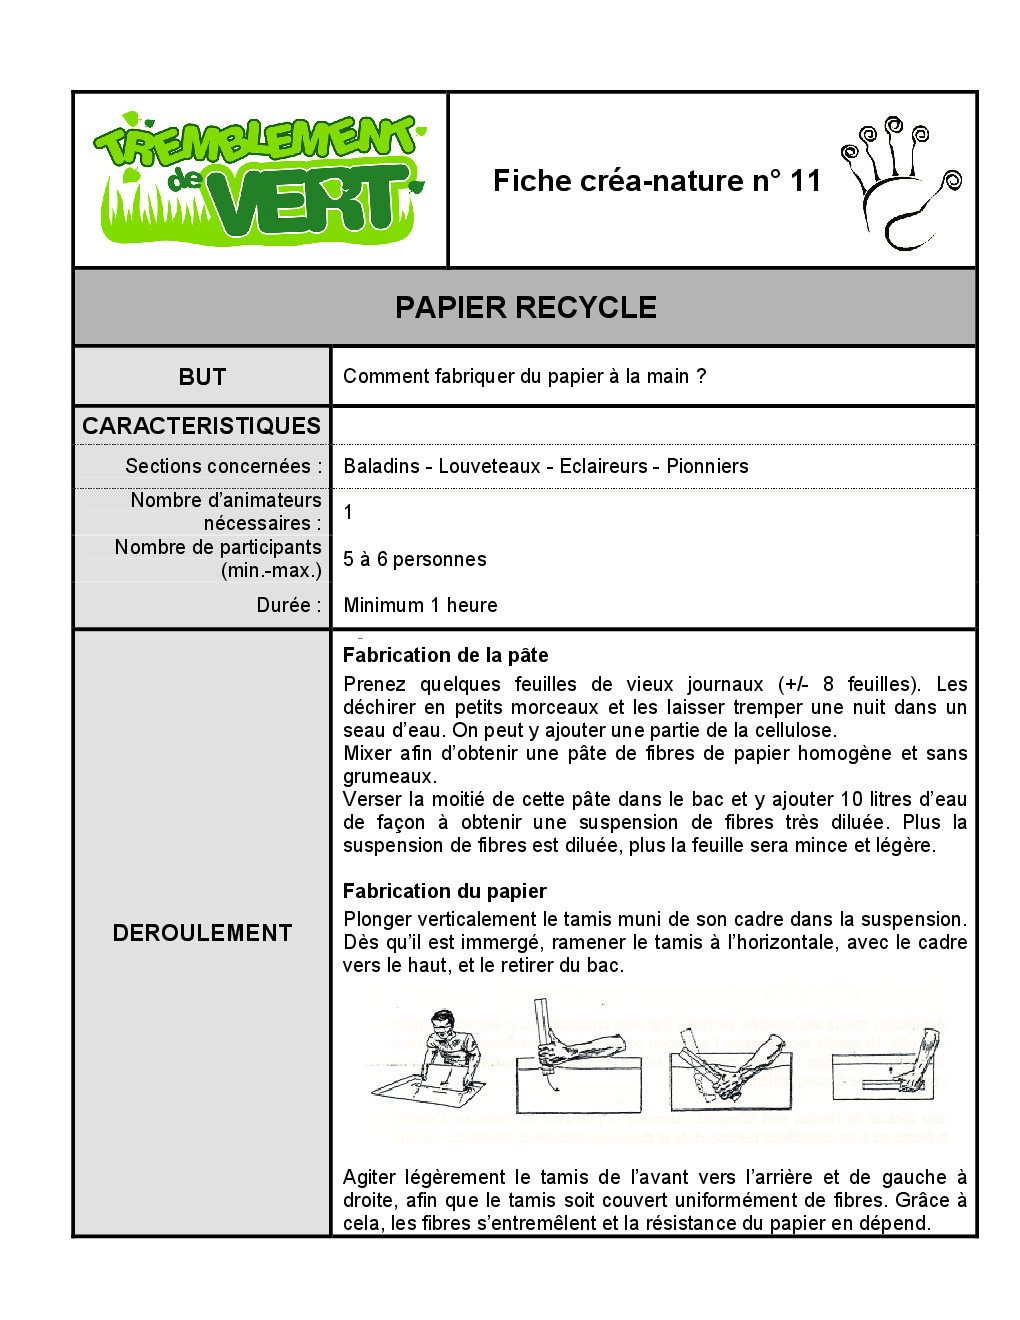 FT_TV_CN_11_papier_recycle.pdf